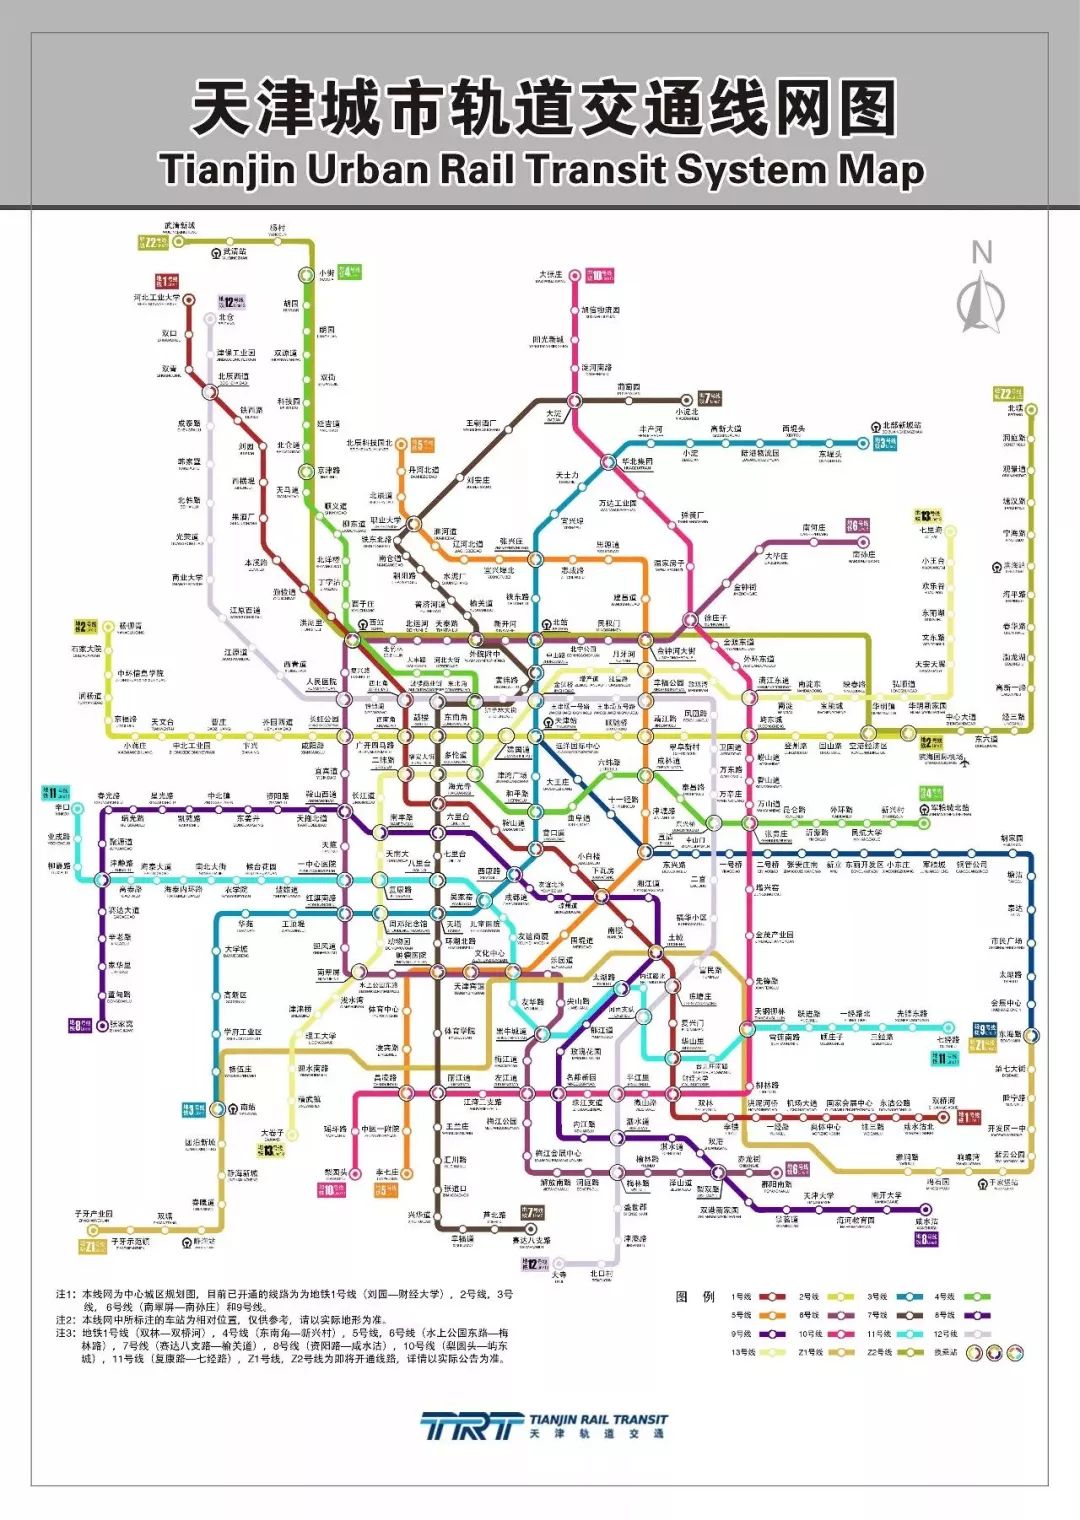 不超过10分钟即可到达轨道交通车站 到 2020年天津的地铁规划无敌了